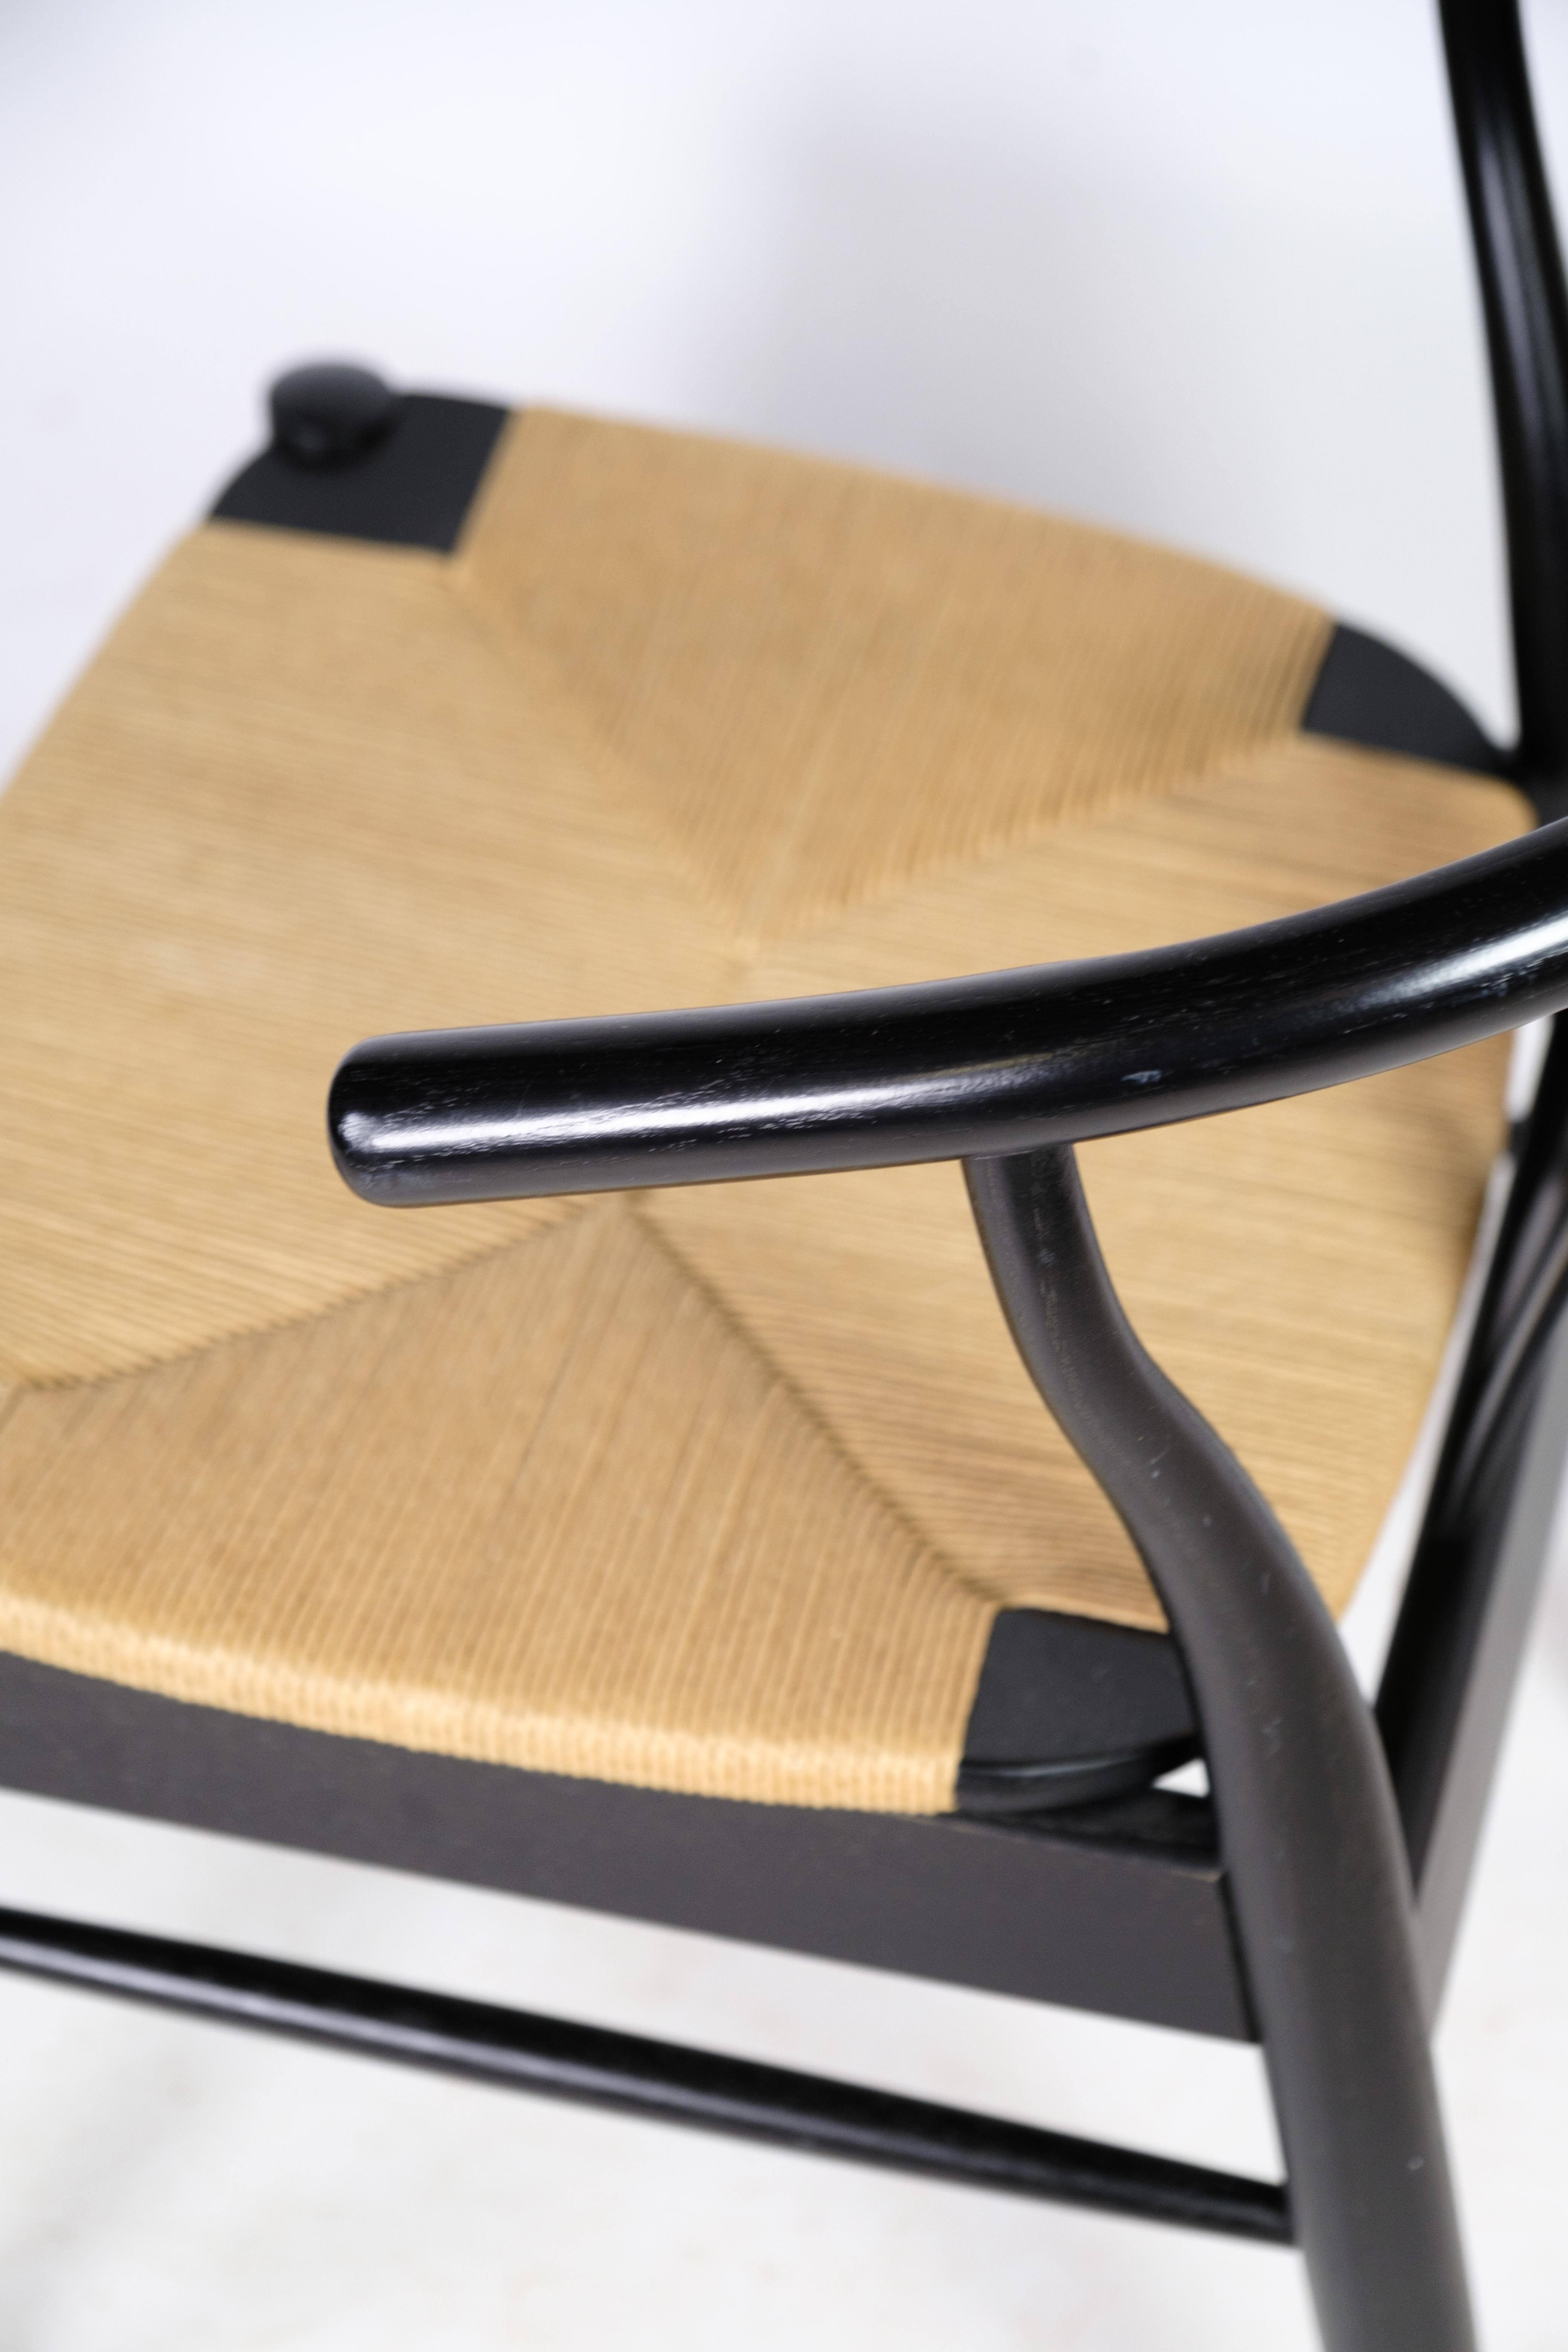 Paire de chaises au design nordique avec assise en osier naturel en bois de hêtre laqué noir par Beeche. Les deux chaises sont en très bon état.
Mesures en cm : H:76 W:54 D:44.5 SH:45

Ce produit sera inspecté minutieusement dans notre atelier